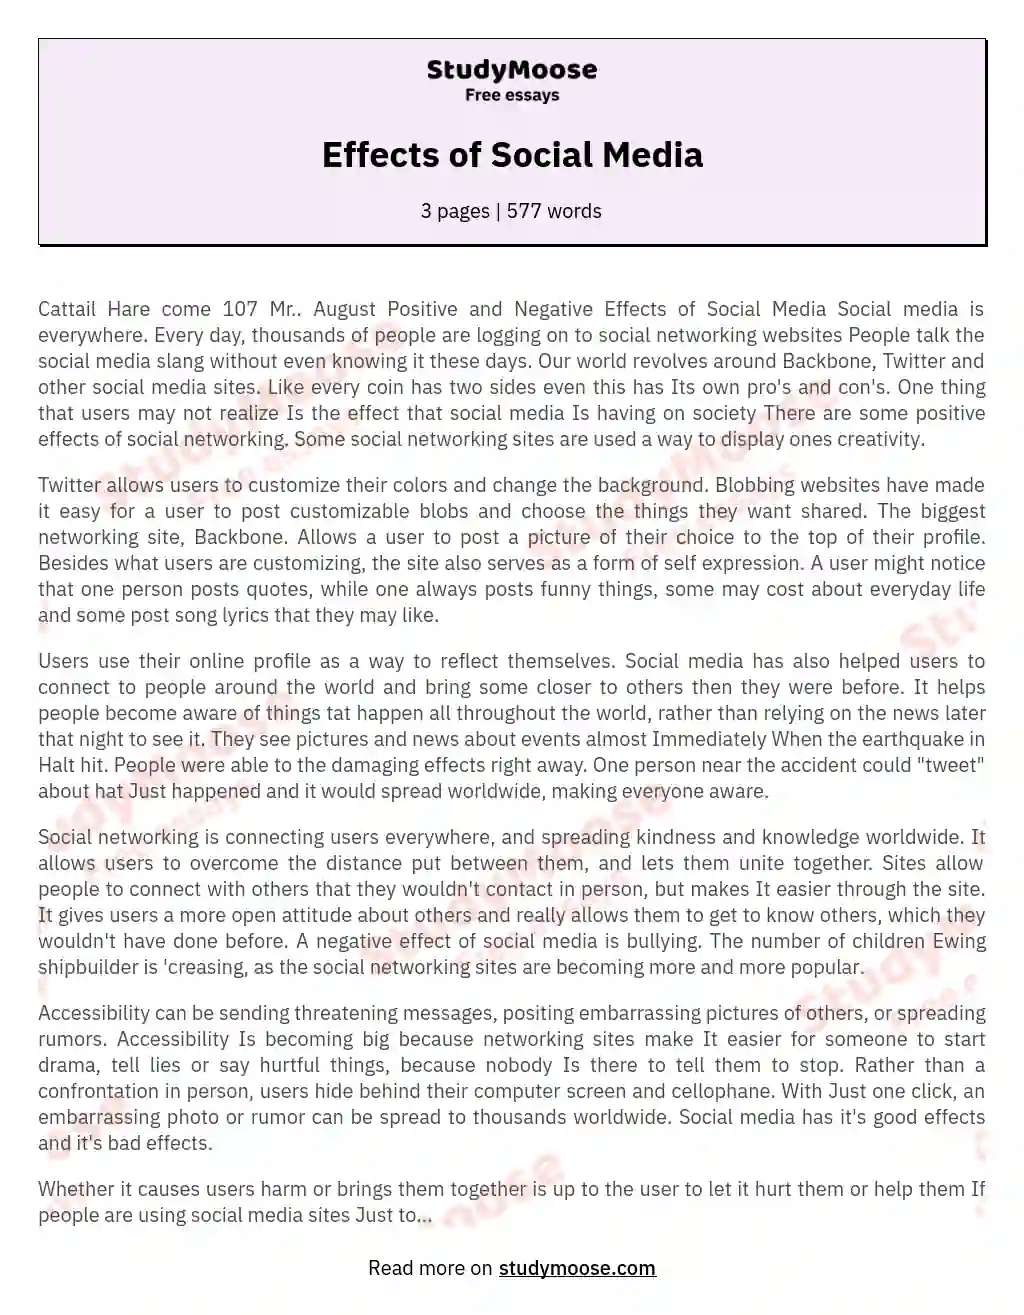 Effects of Social Media essay